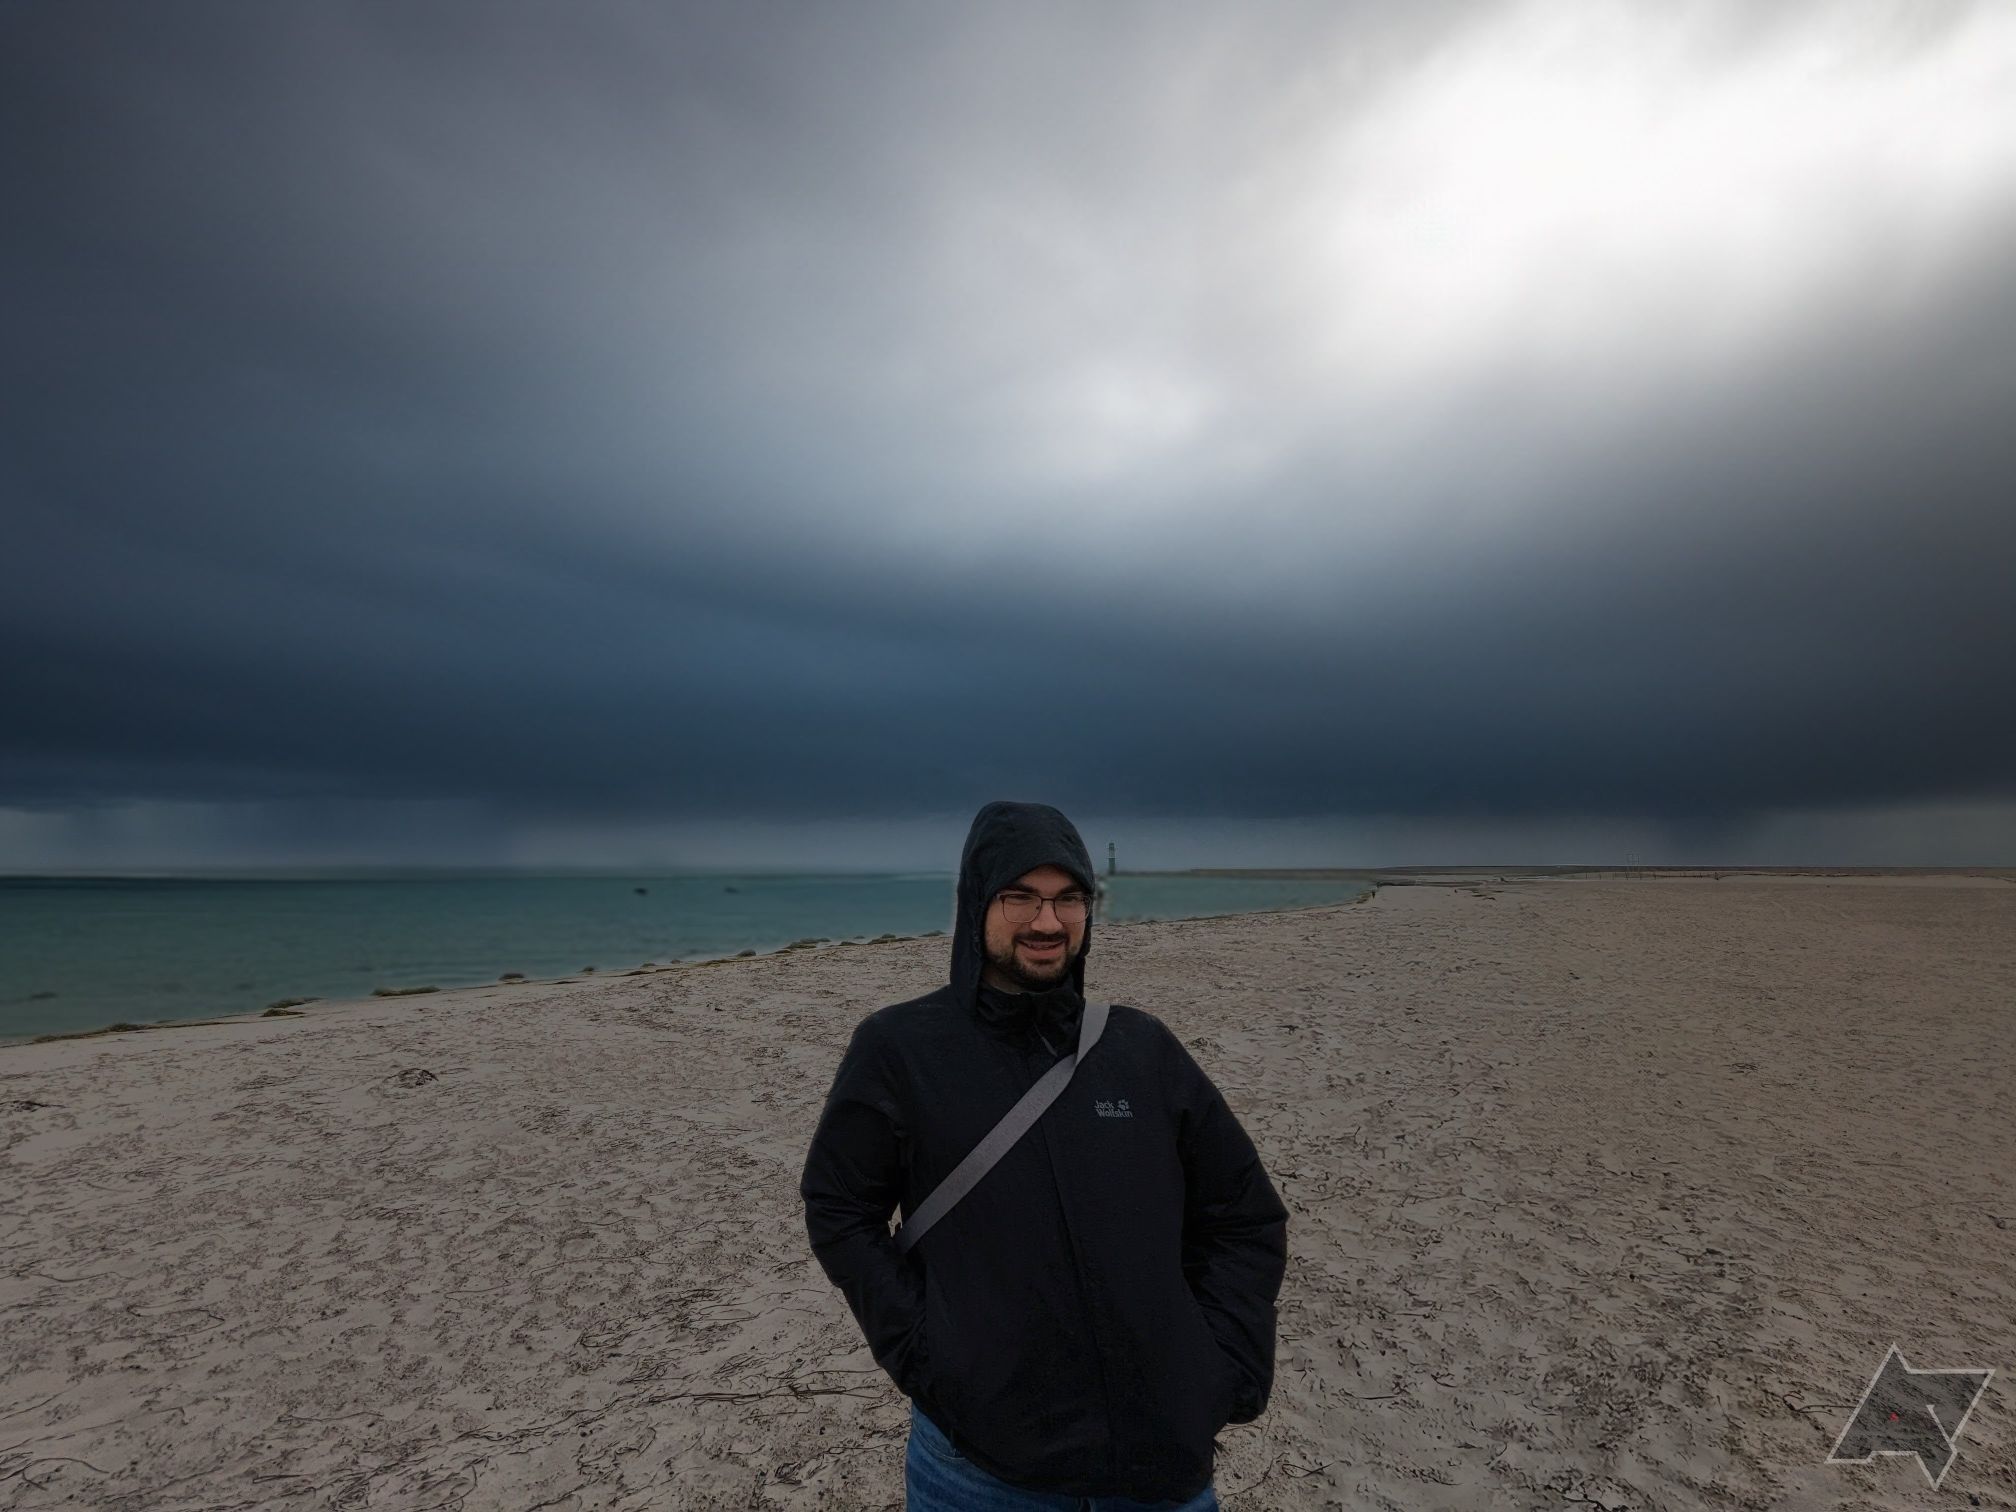 homem em frente a editado em nuvens de tempestade na praia